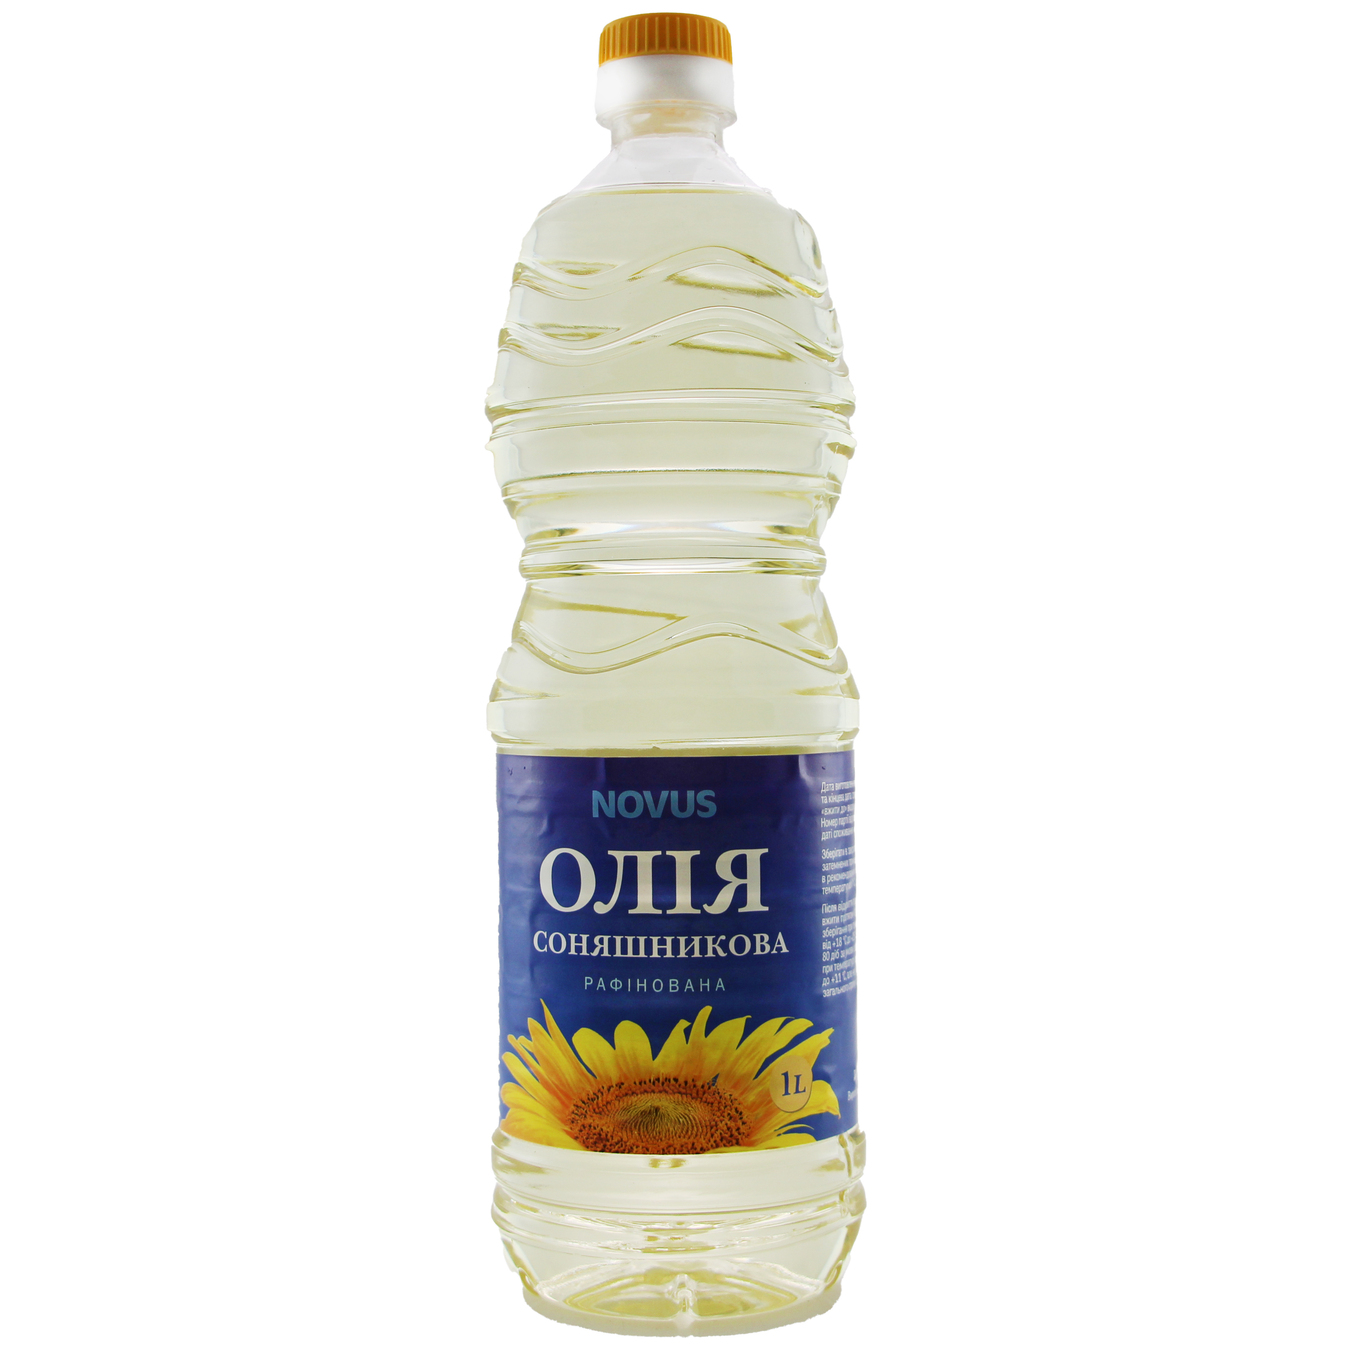 Novus Refined Sunflower Oil 1l